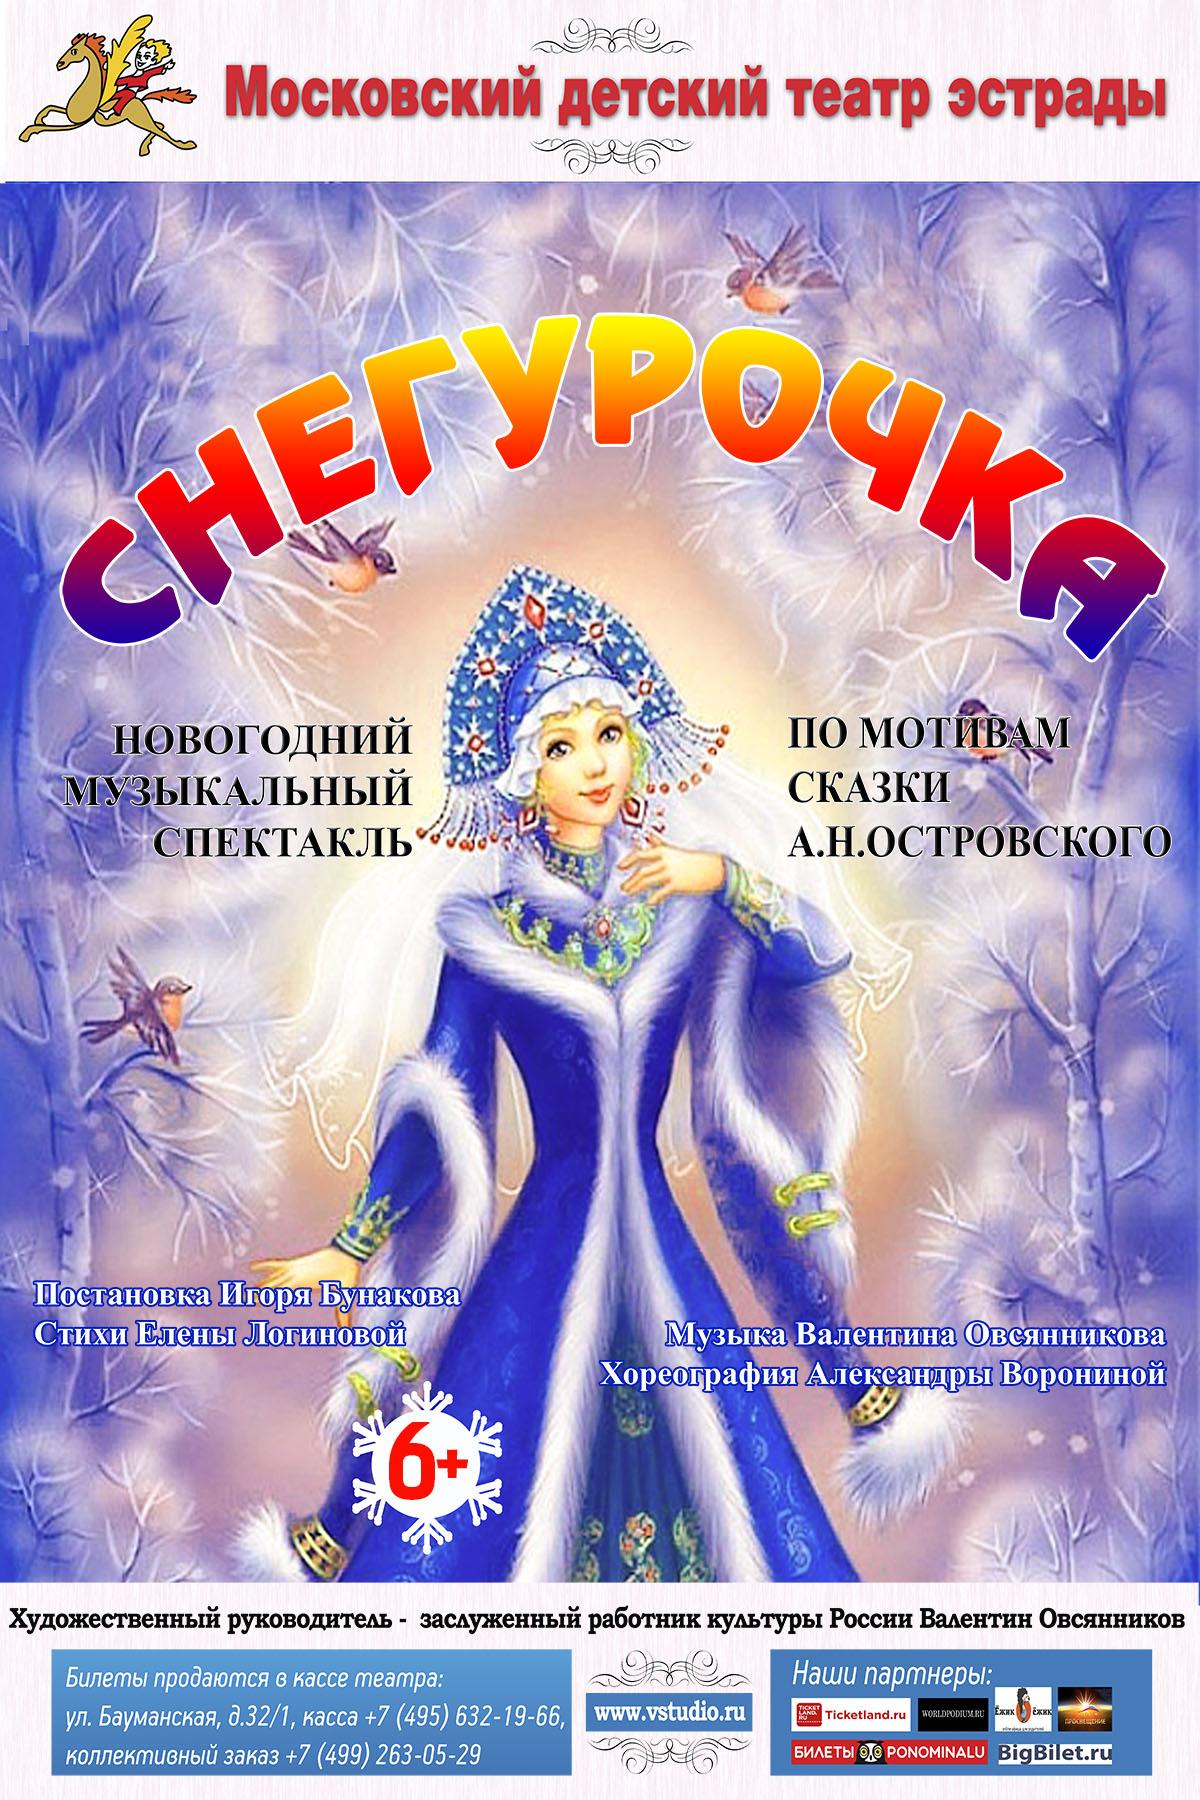 Уже сегодня Новогодняя премьера в Московском детском театре эстрады! Не пропустите!